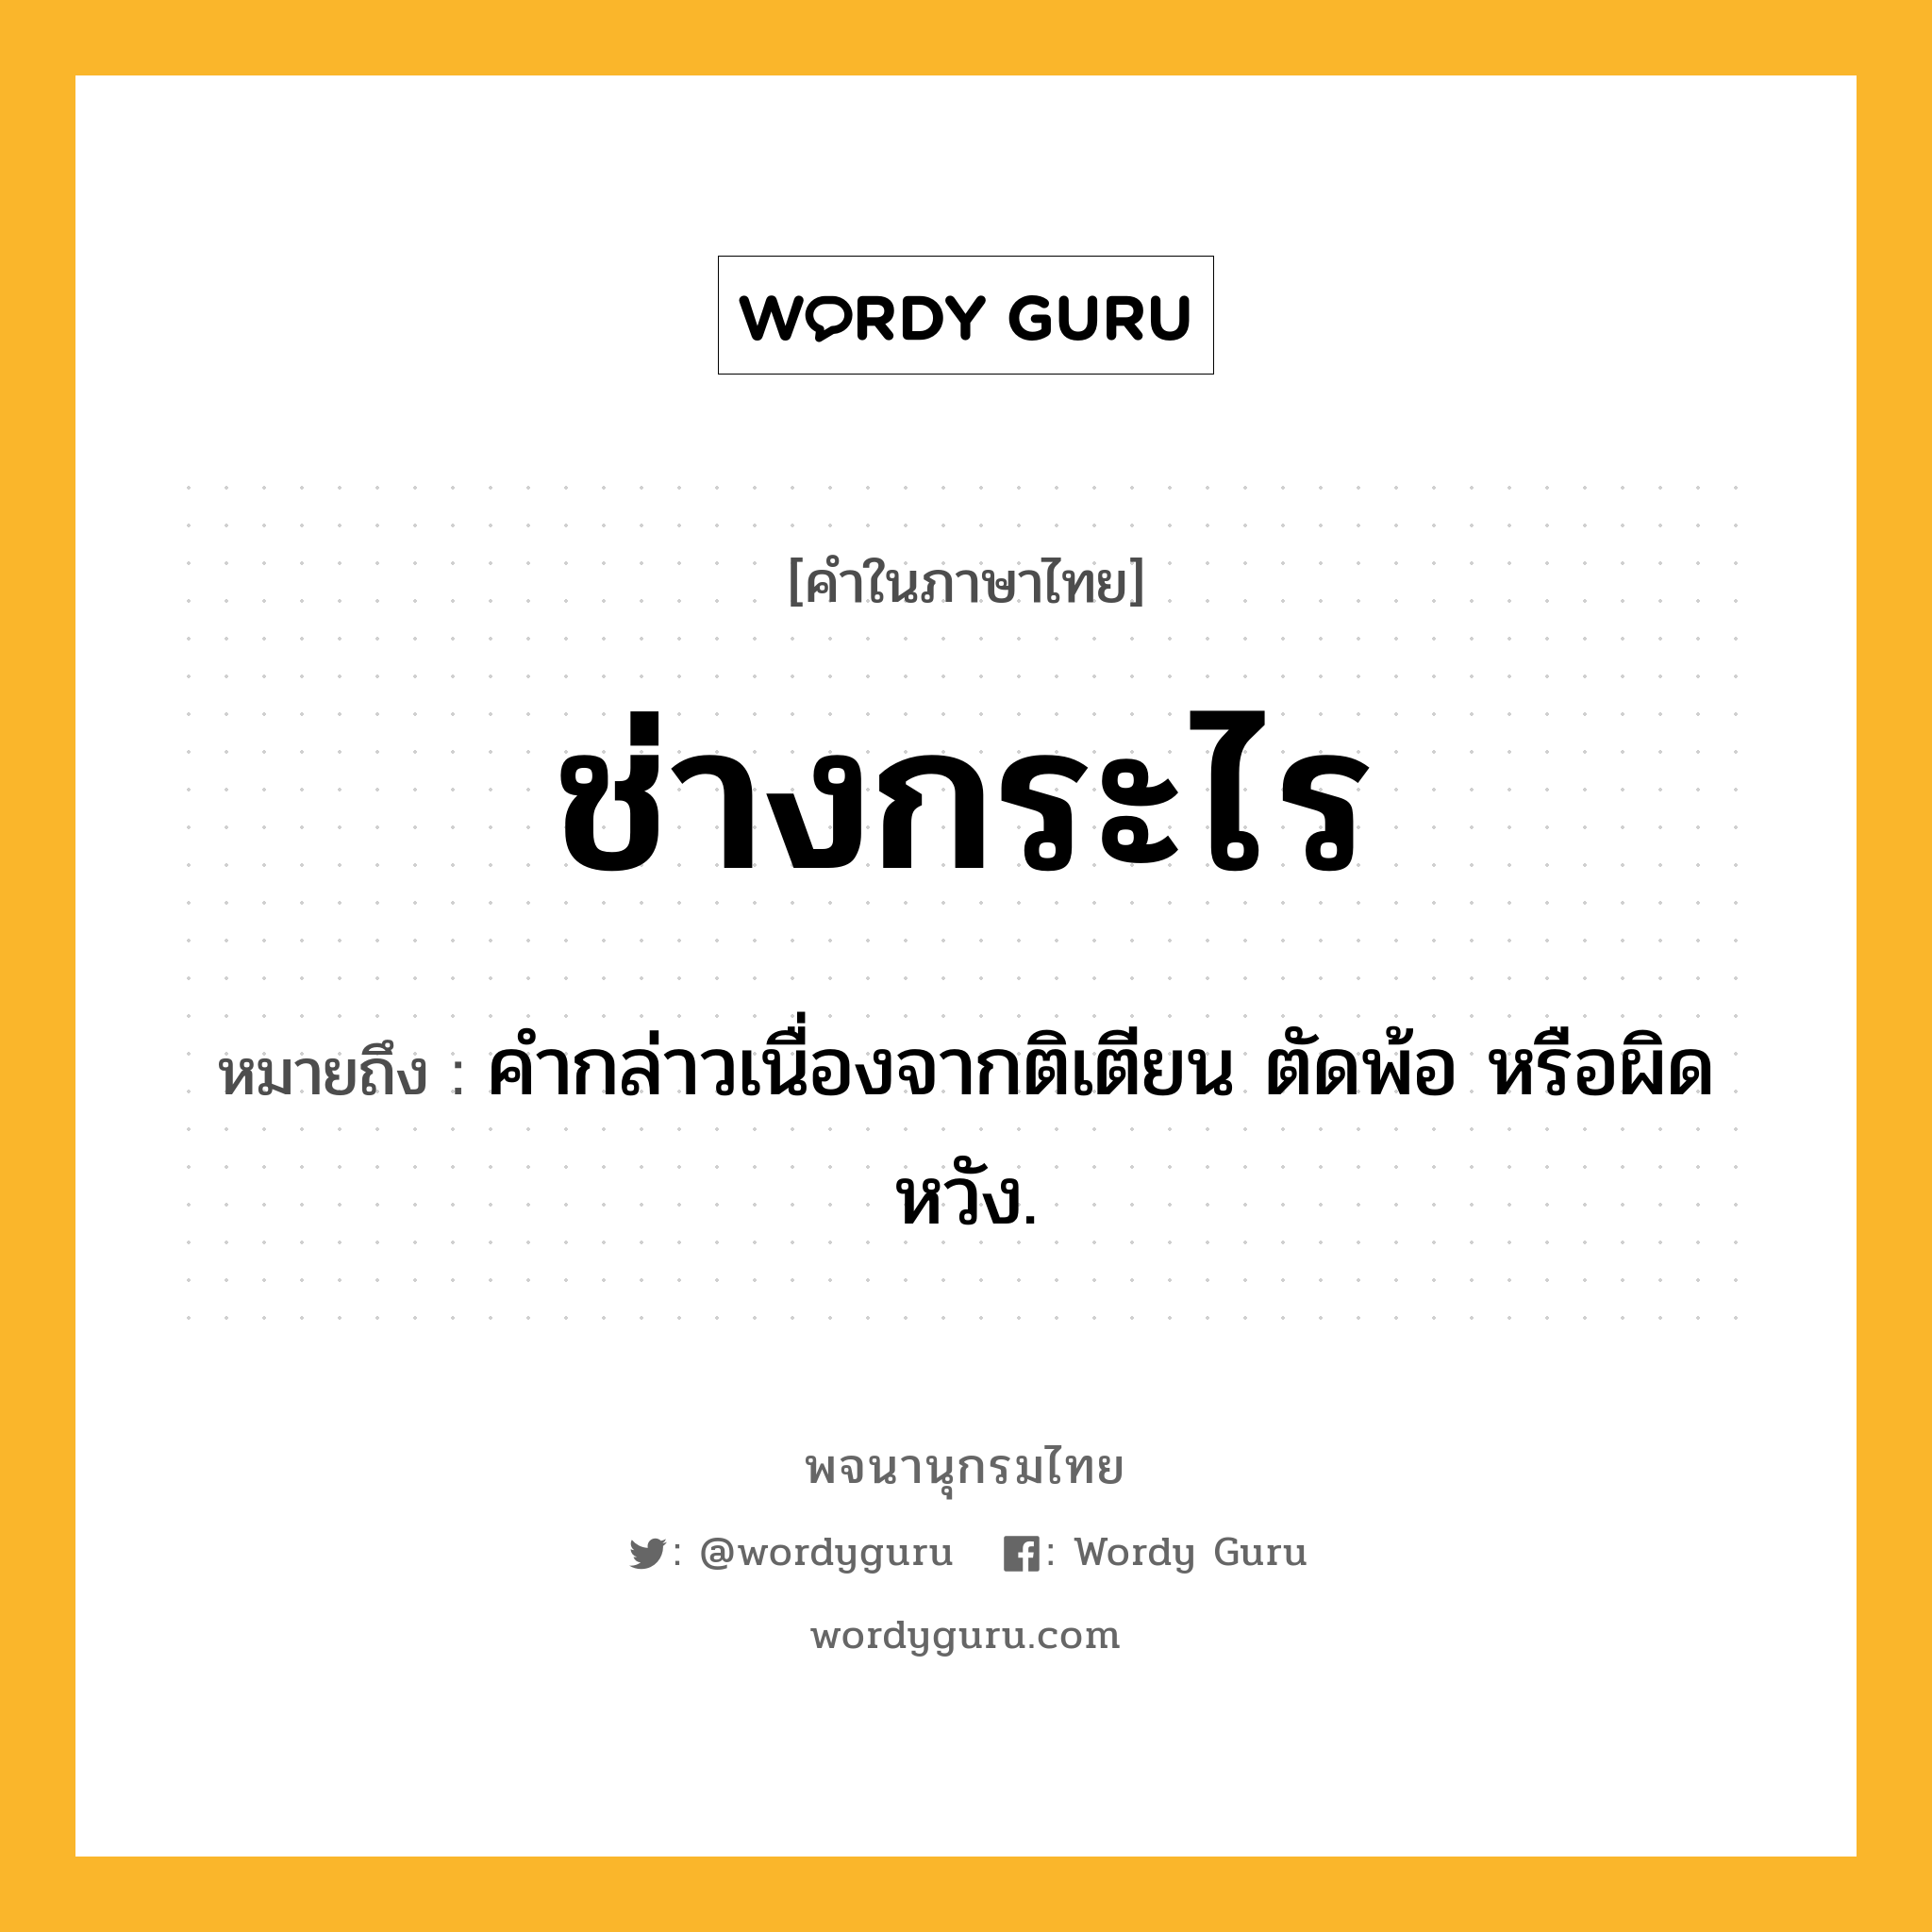 ช่างกระไร หมายถึงอะไร?, คำในภาษาไทย ช่างกระไร หมายถึง คํากล่าวเนื่องจากติเตียน ตัดพ้อ หรือผิดหวัง.